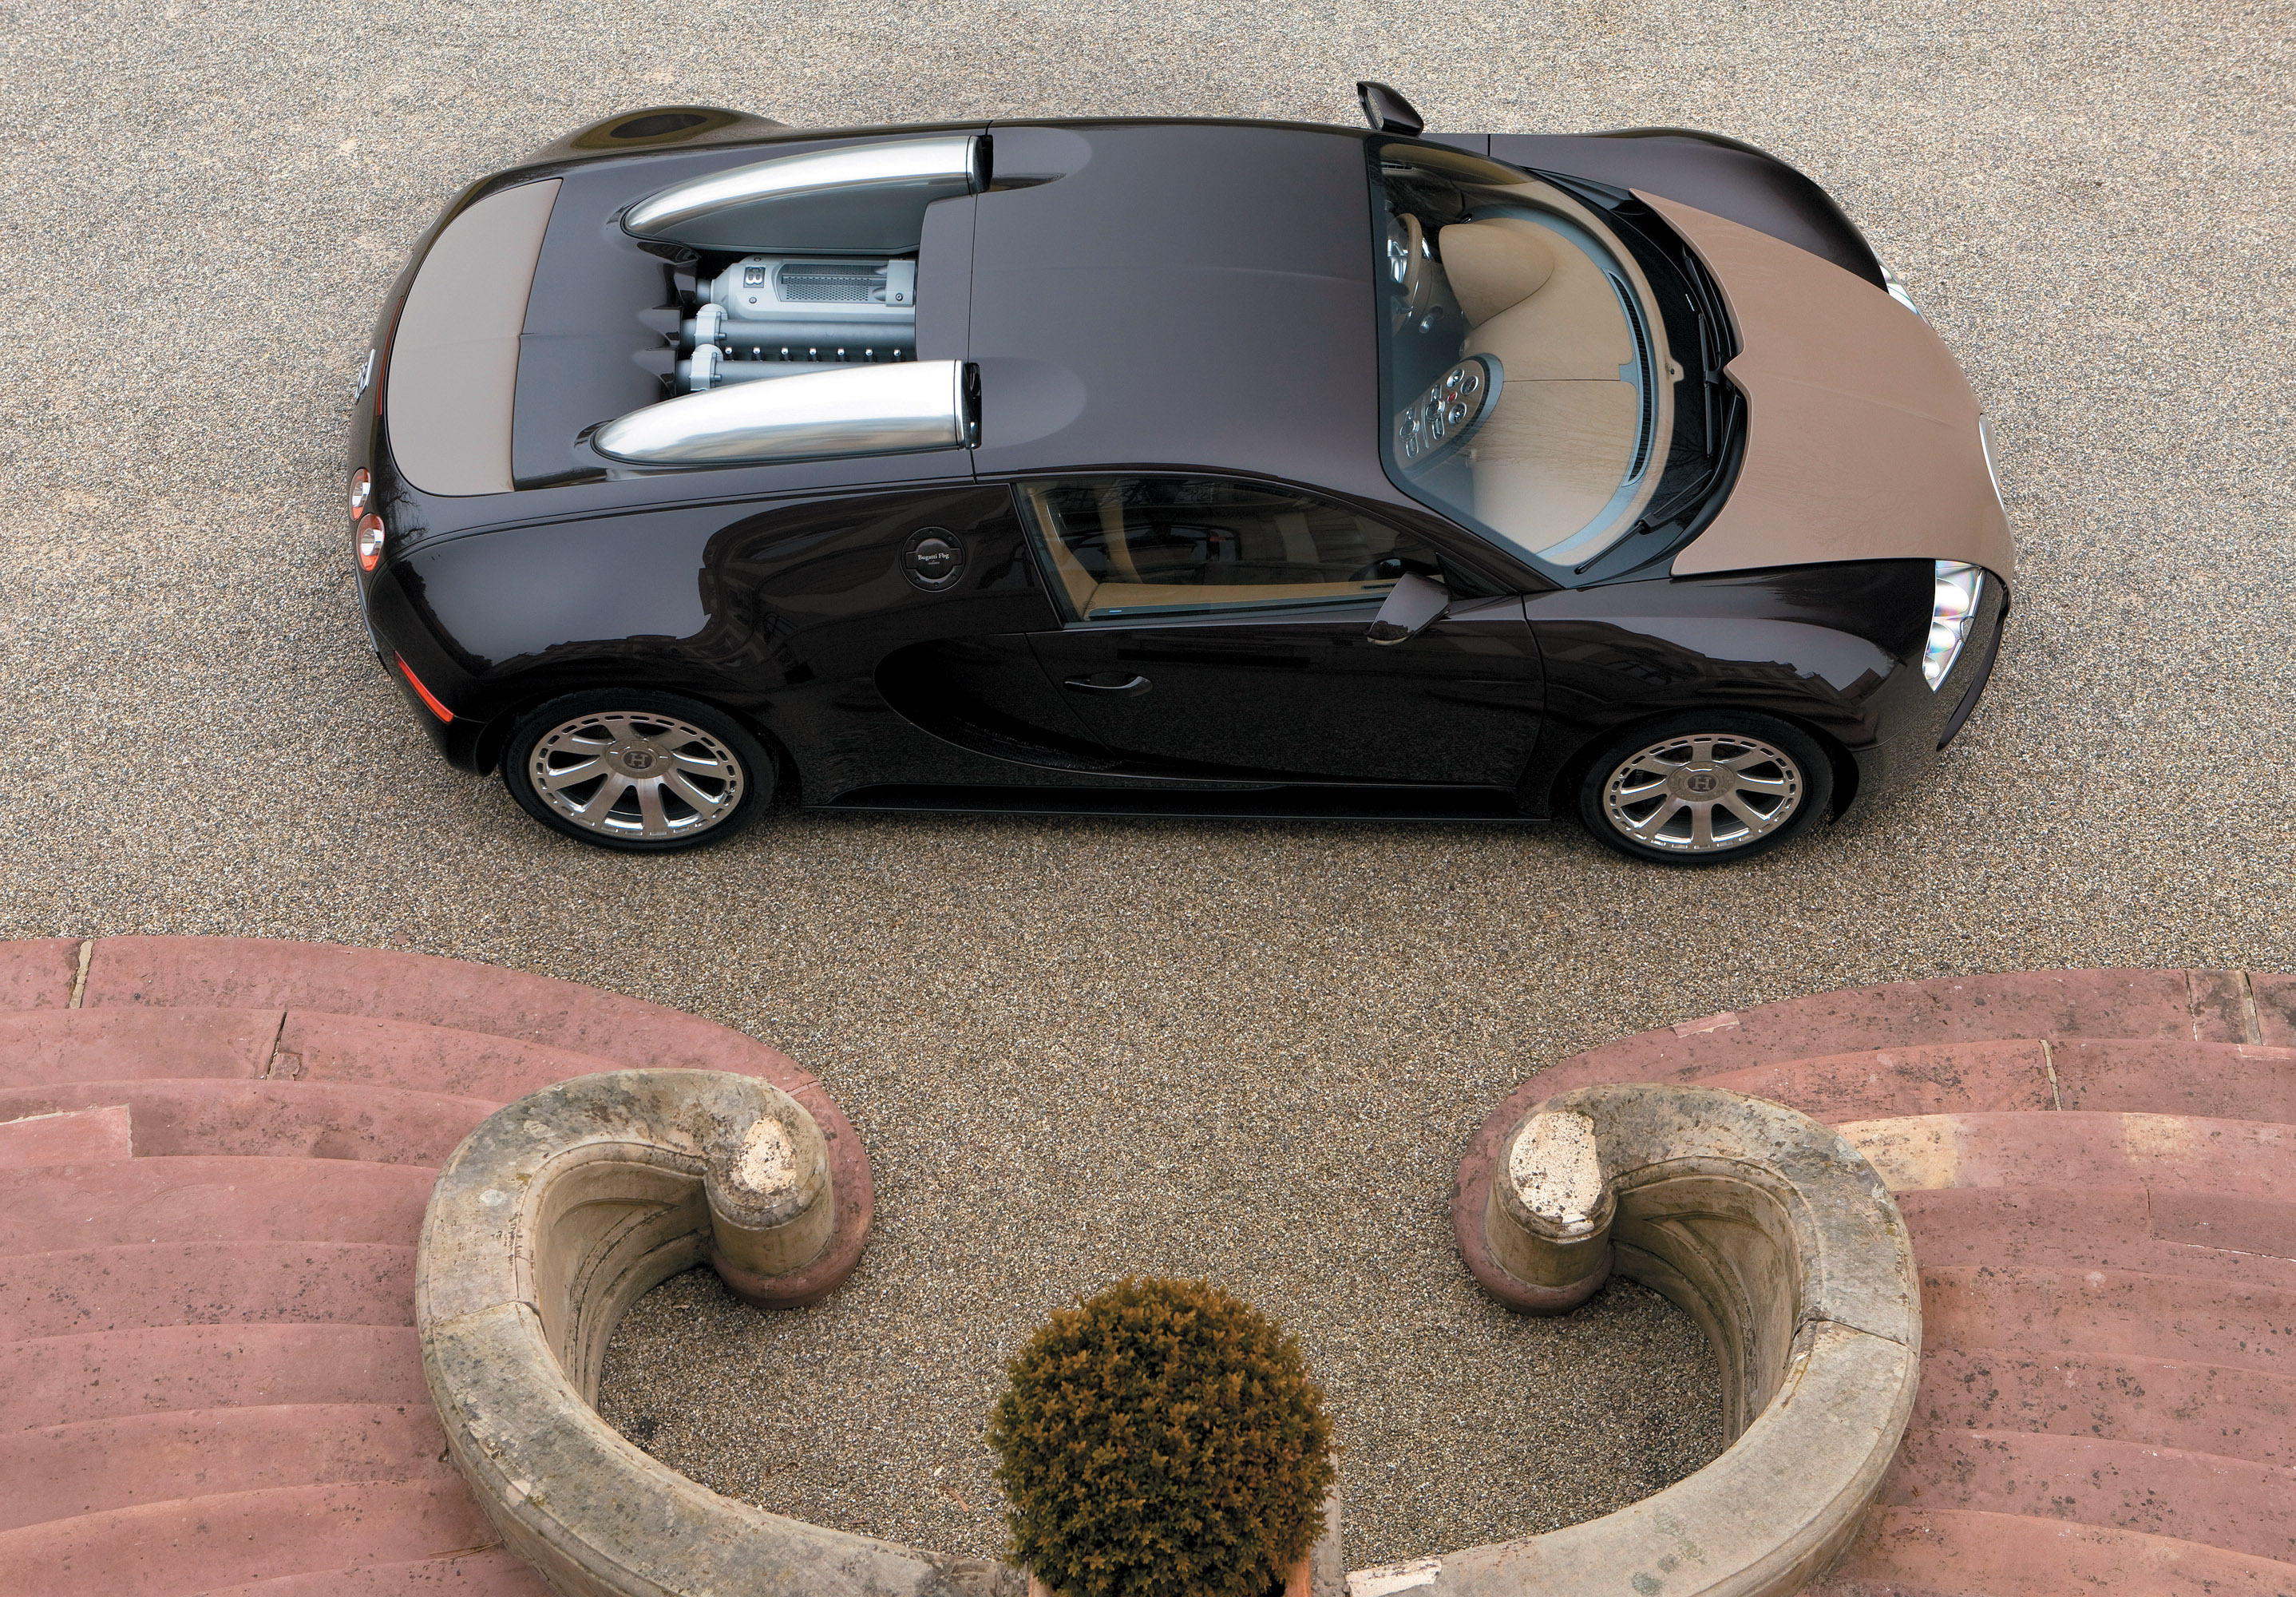 http://www.automobilesreview.com/gallery/bugatti-veyron-fbg/bugatti-veyron-fbg-04.jpg